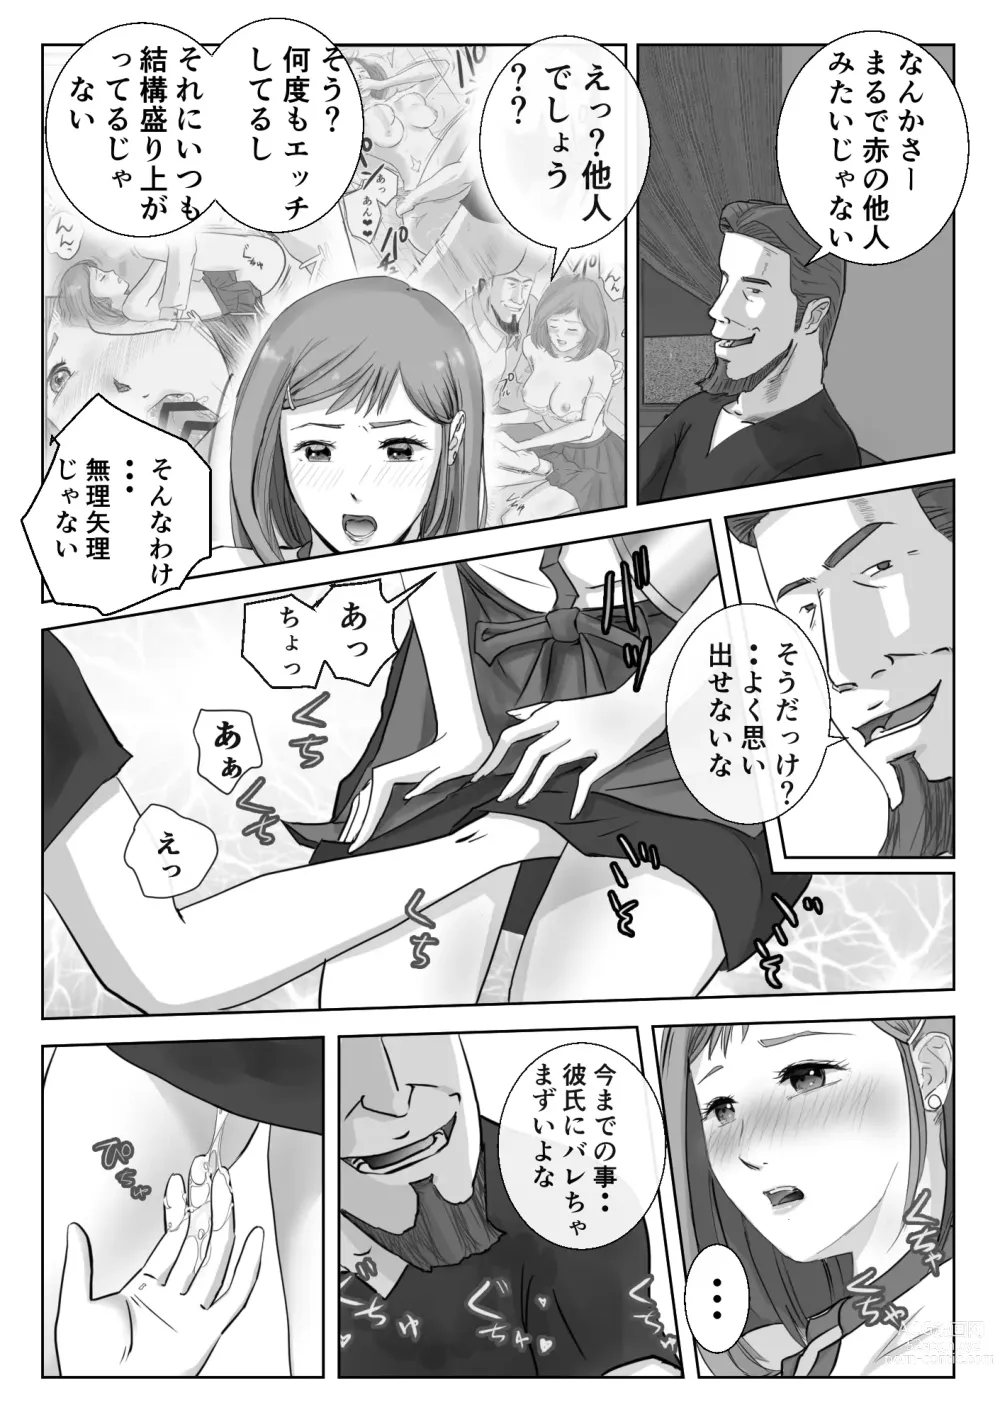 Page 10 of doujinshi Ano Hi no Uso 3